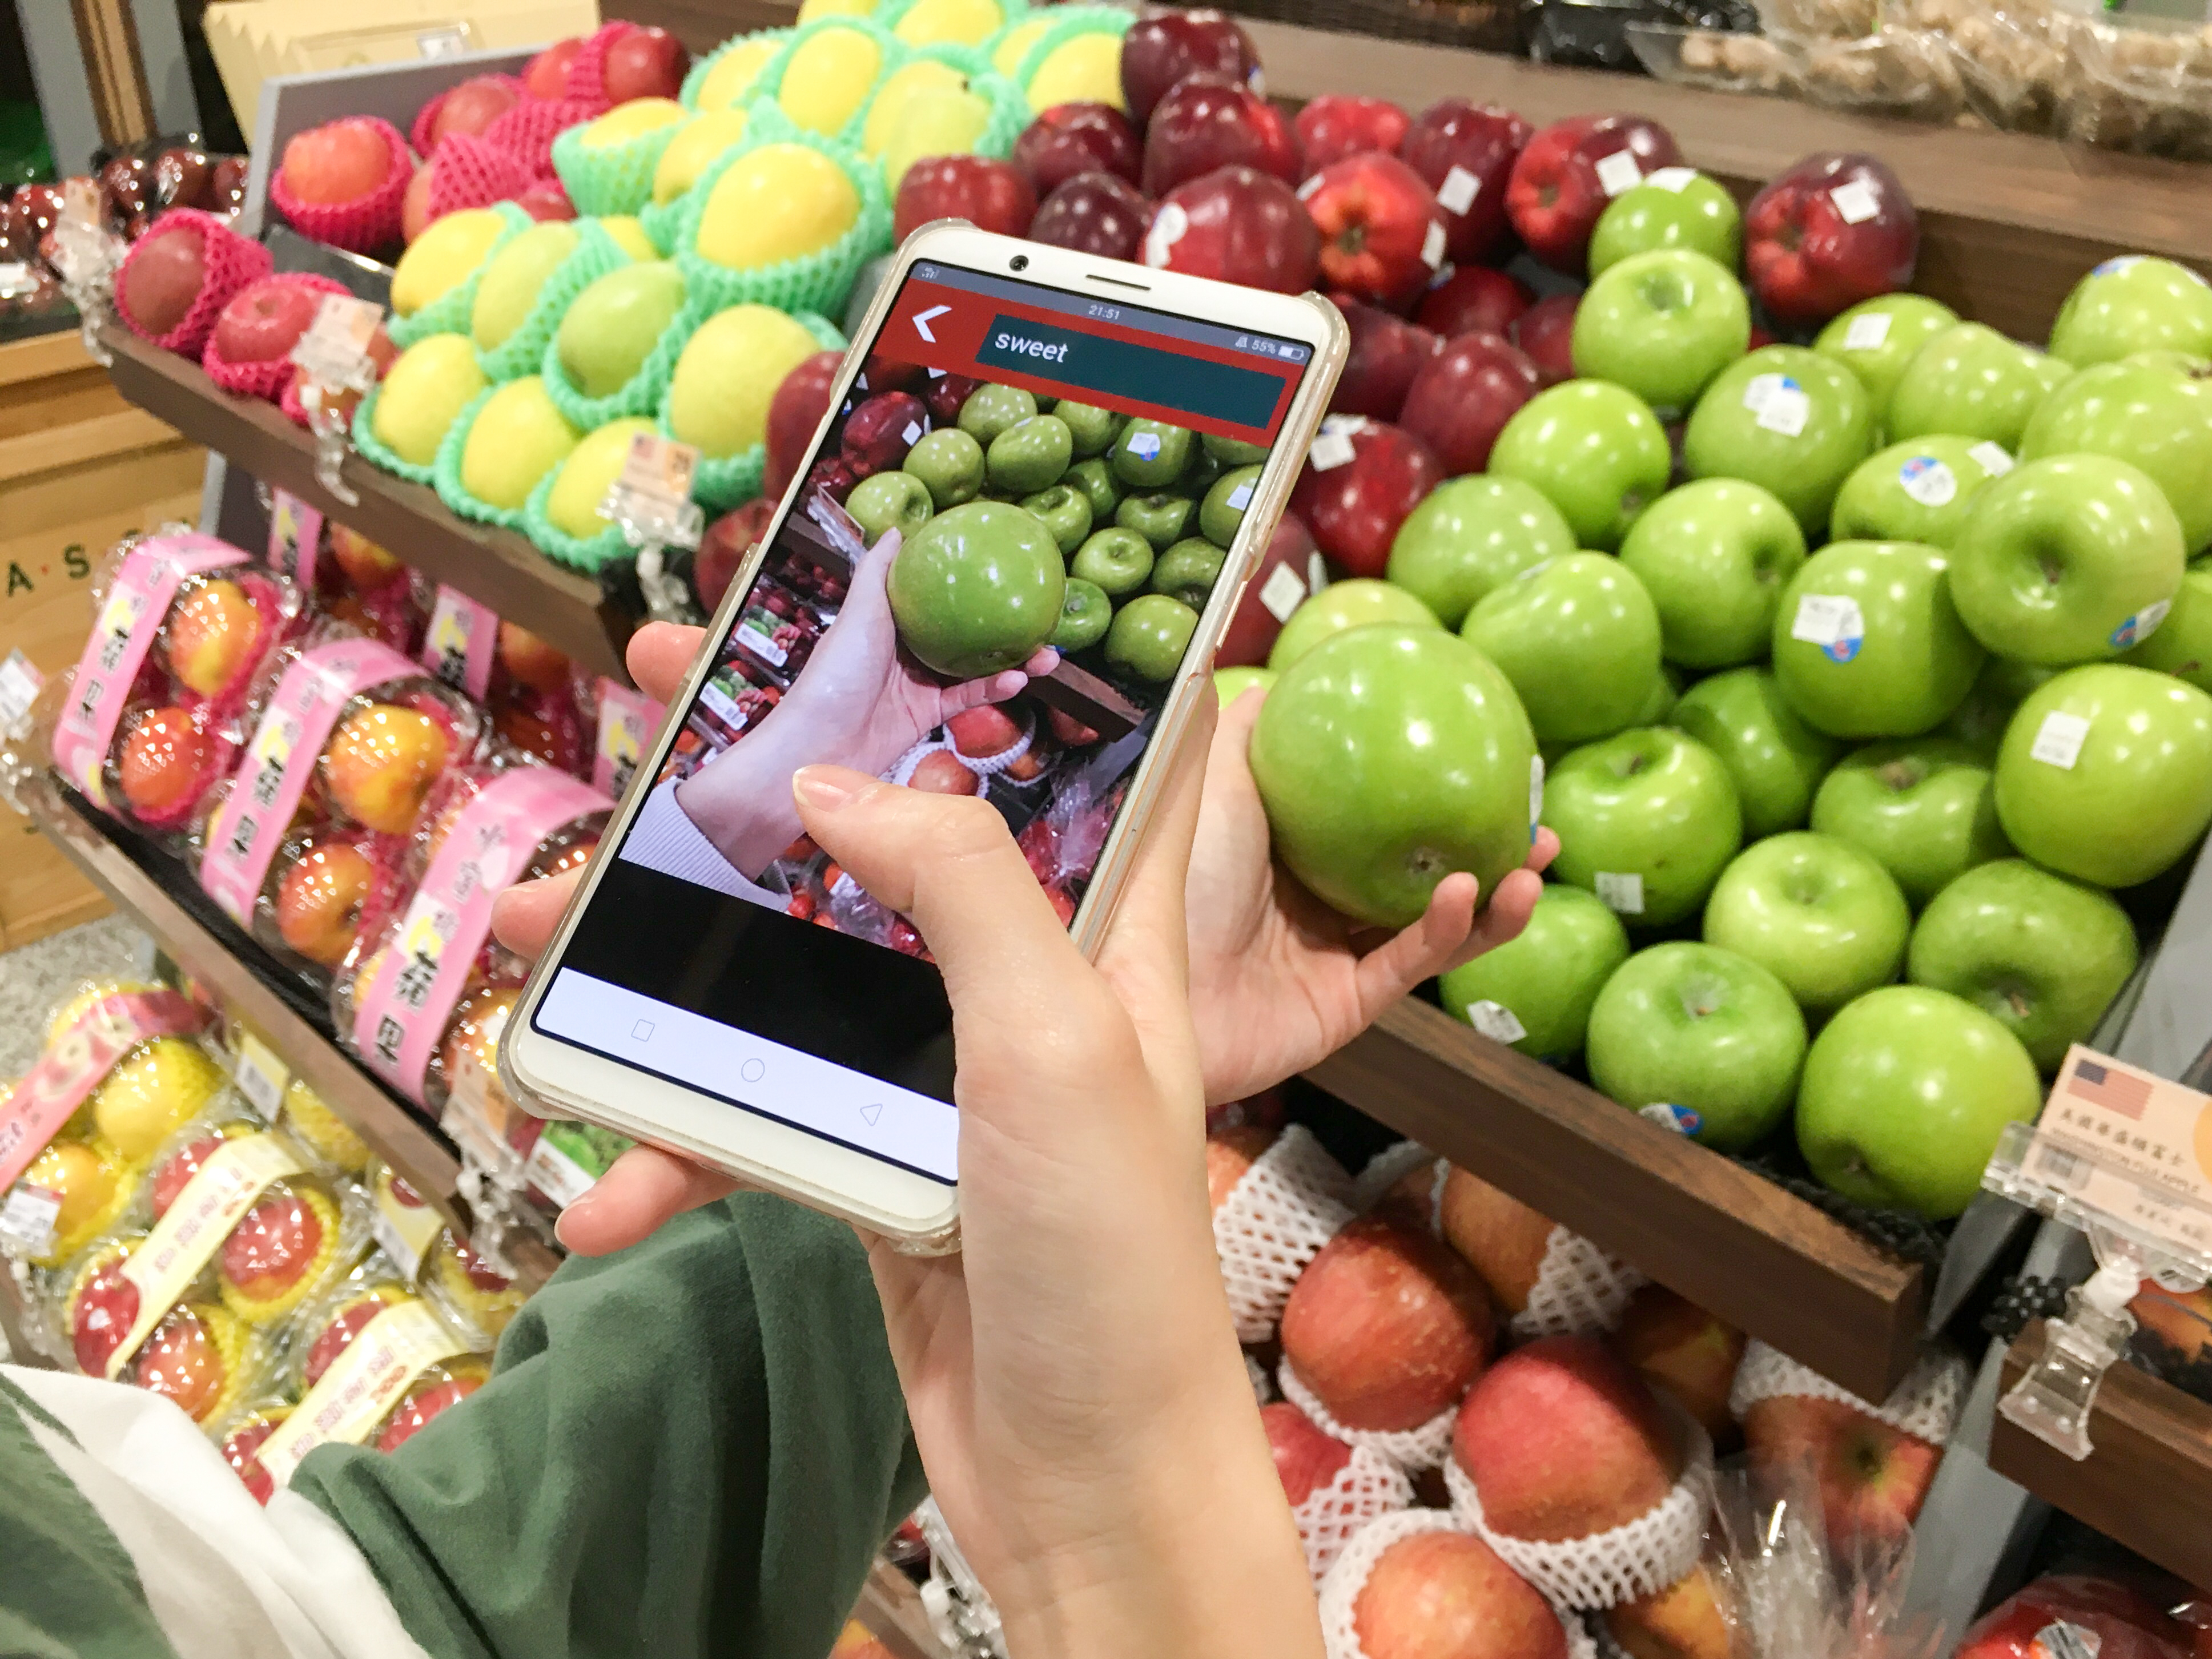 拍照測甜度　圖像辨識助選購蘋果 | 華視新聞